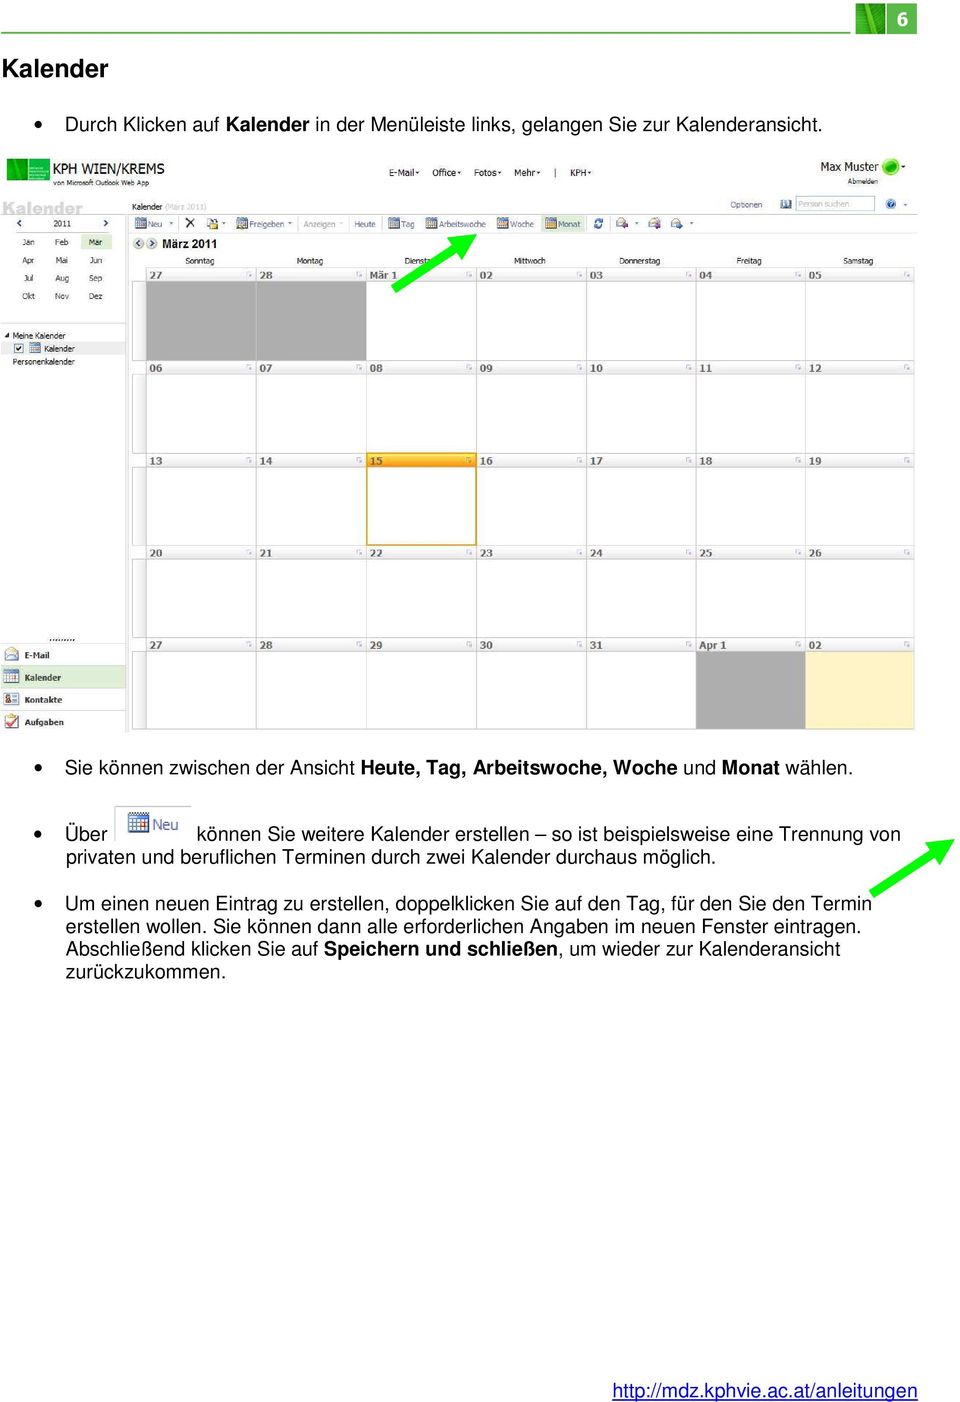 Über können Sie weitere Kalender erstellen so ist beispielsweise eine Trennung von privaten und beruflichen Terminen durch zwei Kalender durchaus möglich.